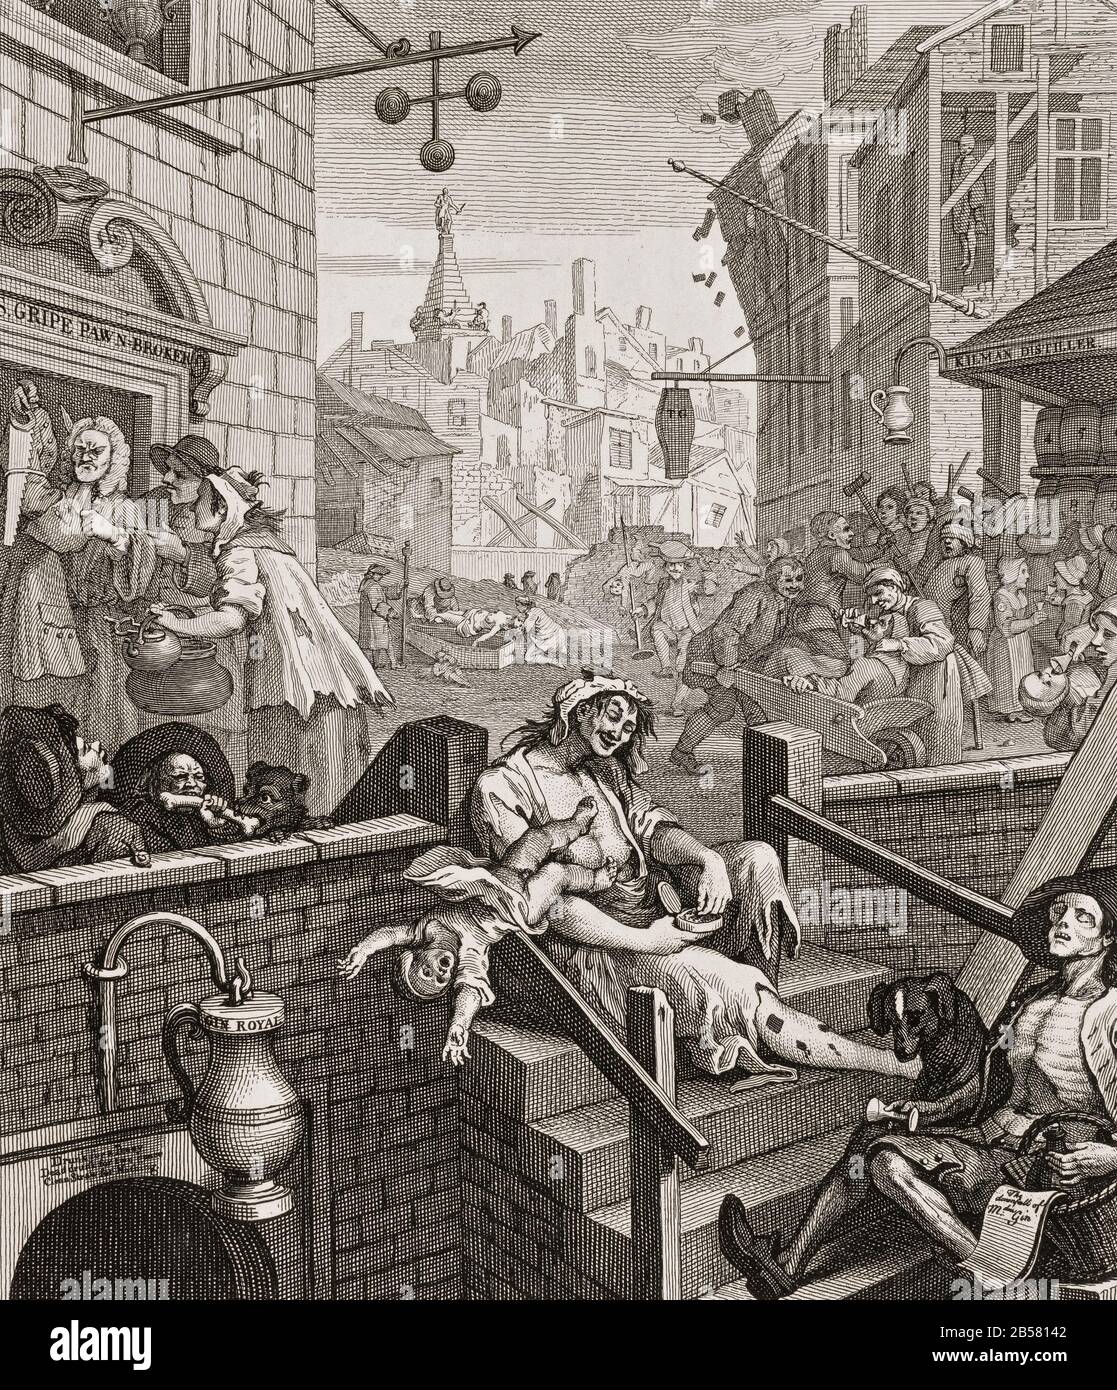 Gin Lane, De Beer Street Et Gin Lane. Une scène de désolation urbaine avec des Londoniens rêvés de gin, notamment une femme qui laisse son enfant tomber à sa mort et un ballade-vendeur émacié; en arrière-plan est la tour de St George's Bloomsbury. William Hogarth, 1751 Banque D'Images